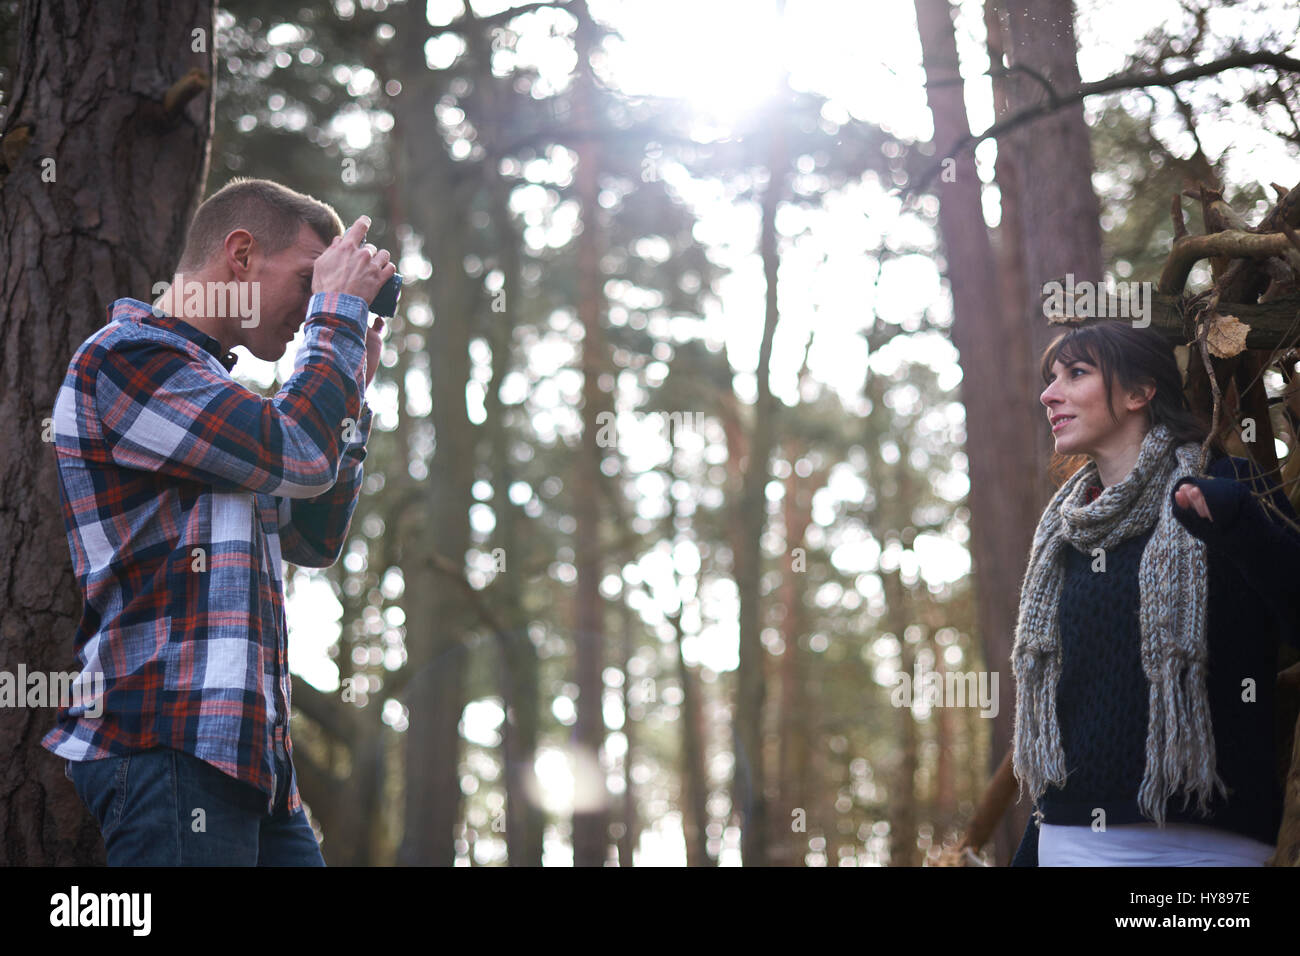 Un uomo prende una foto del suo compagno femminile come la passeggiata nel bosco Foto Stock